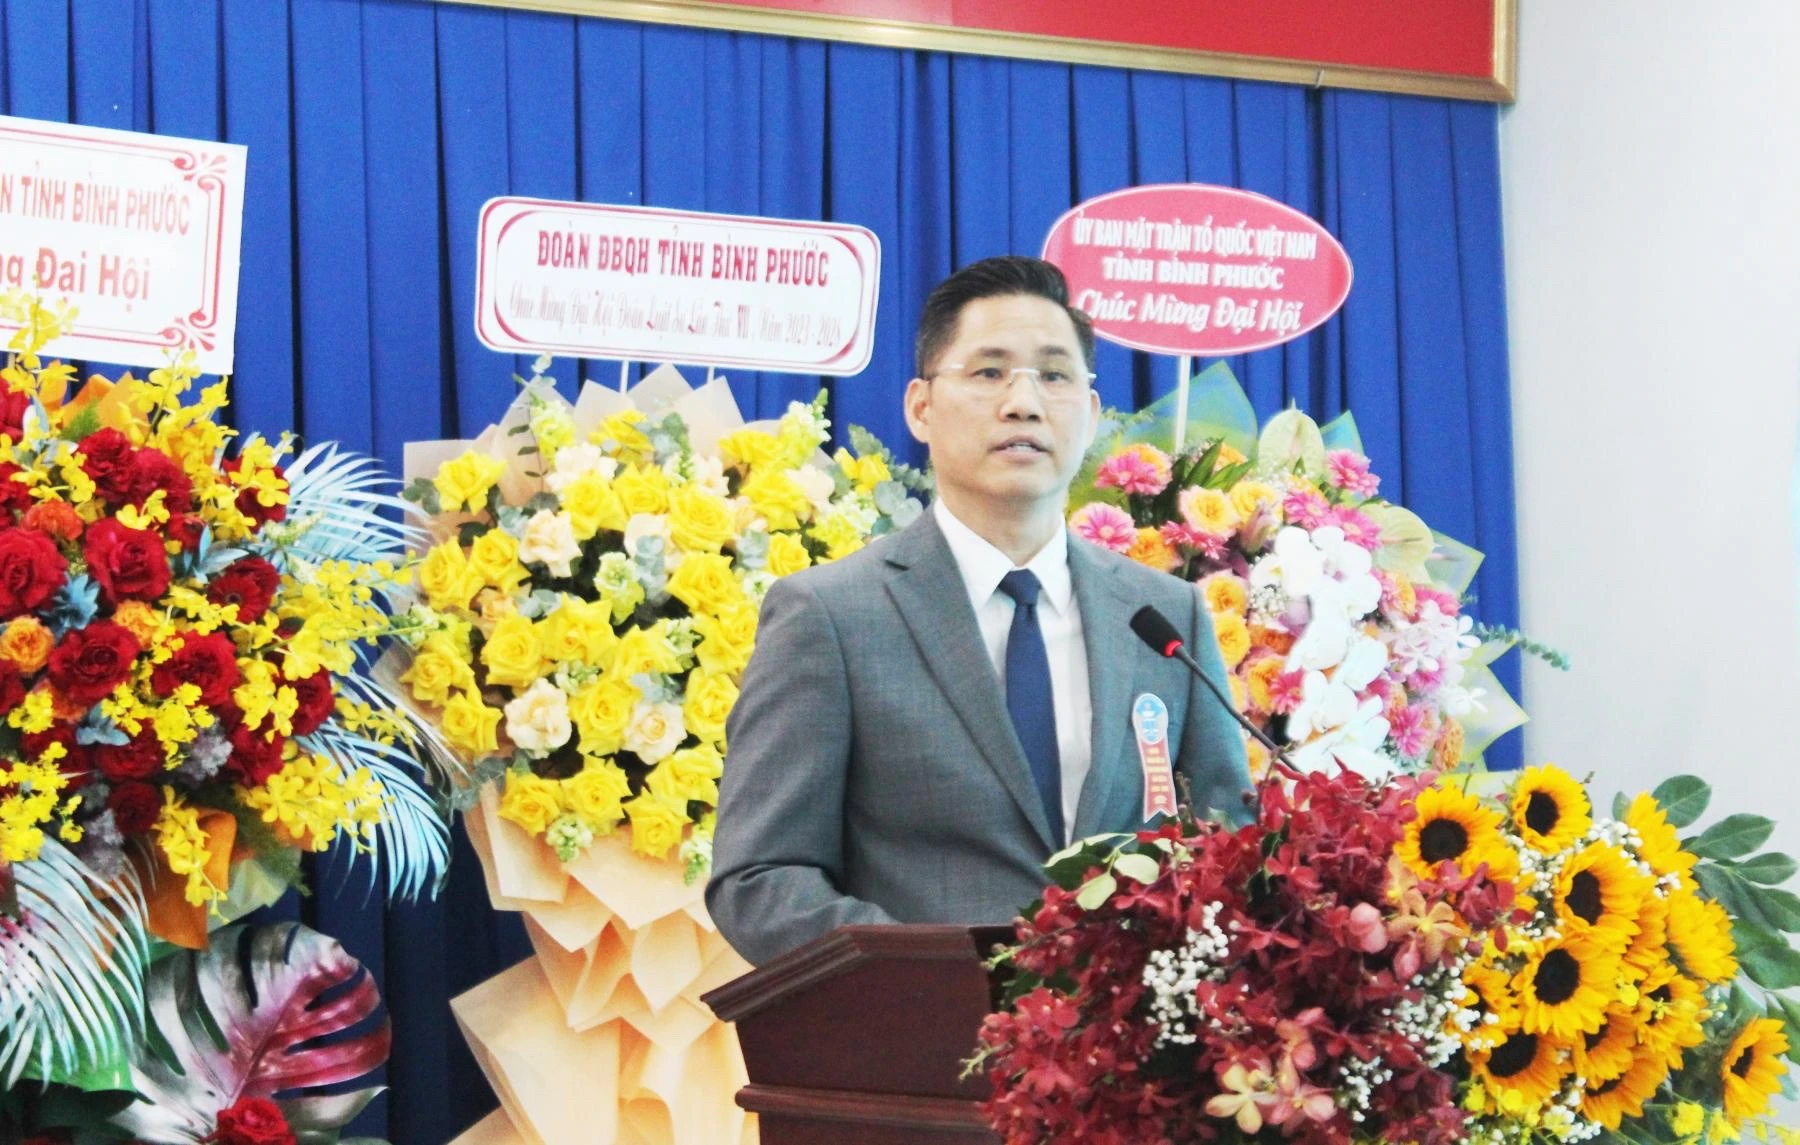 Luật sư Nguyễn Hải Nam, Phó Chủ tịch Liên đoàn Luật sư Việt Nam phát biểu tại Đại hội.